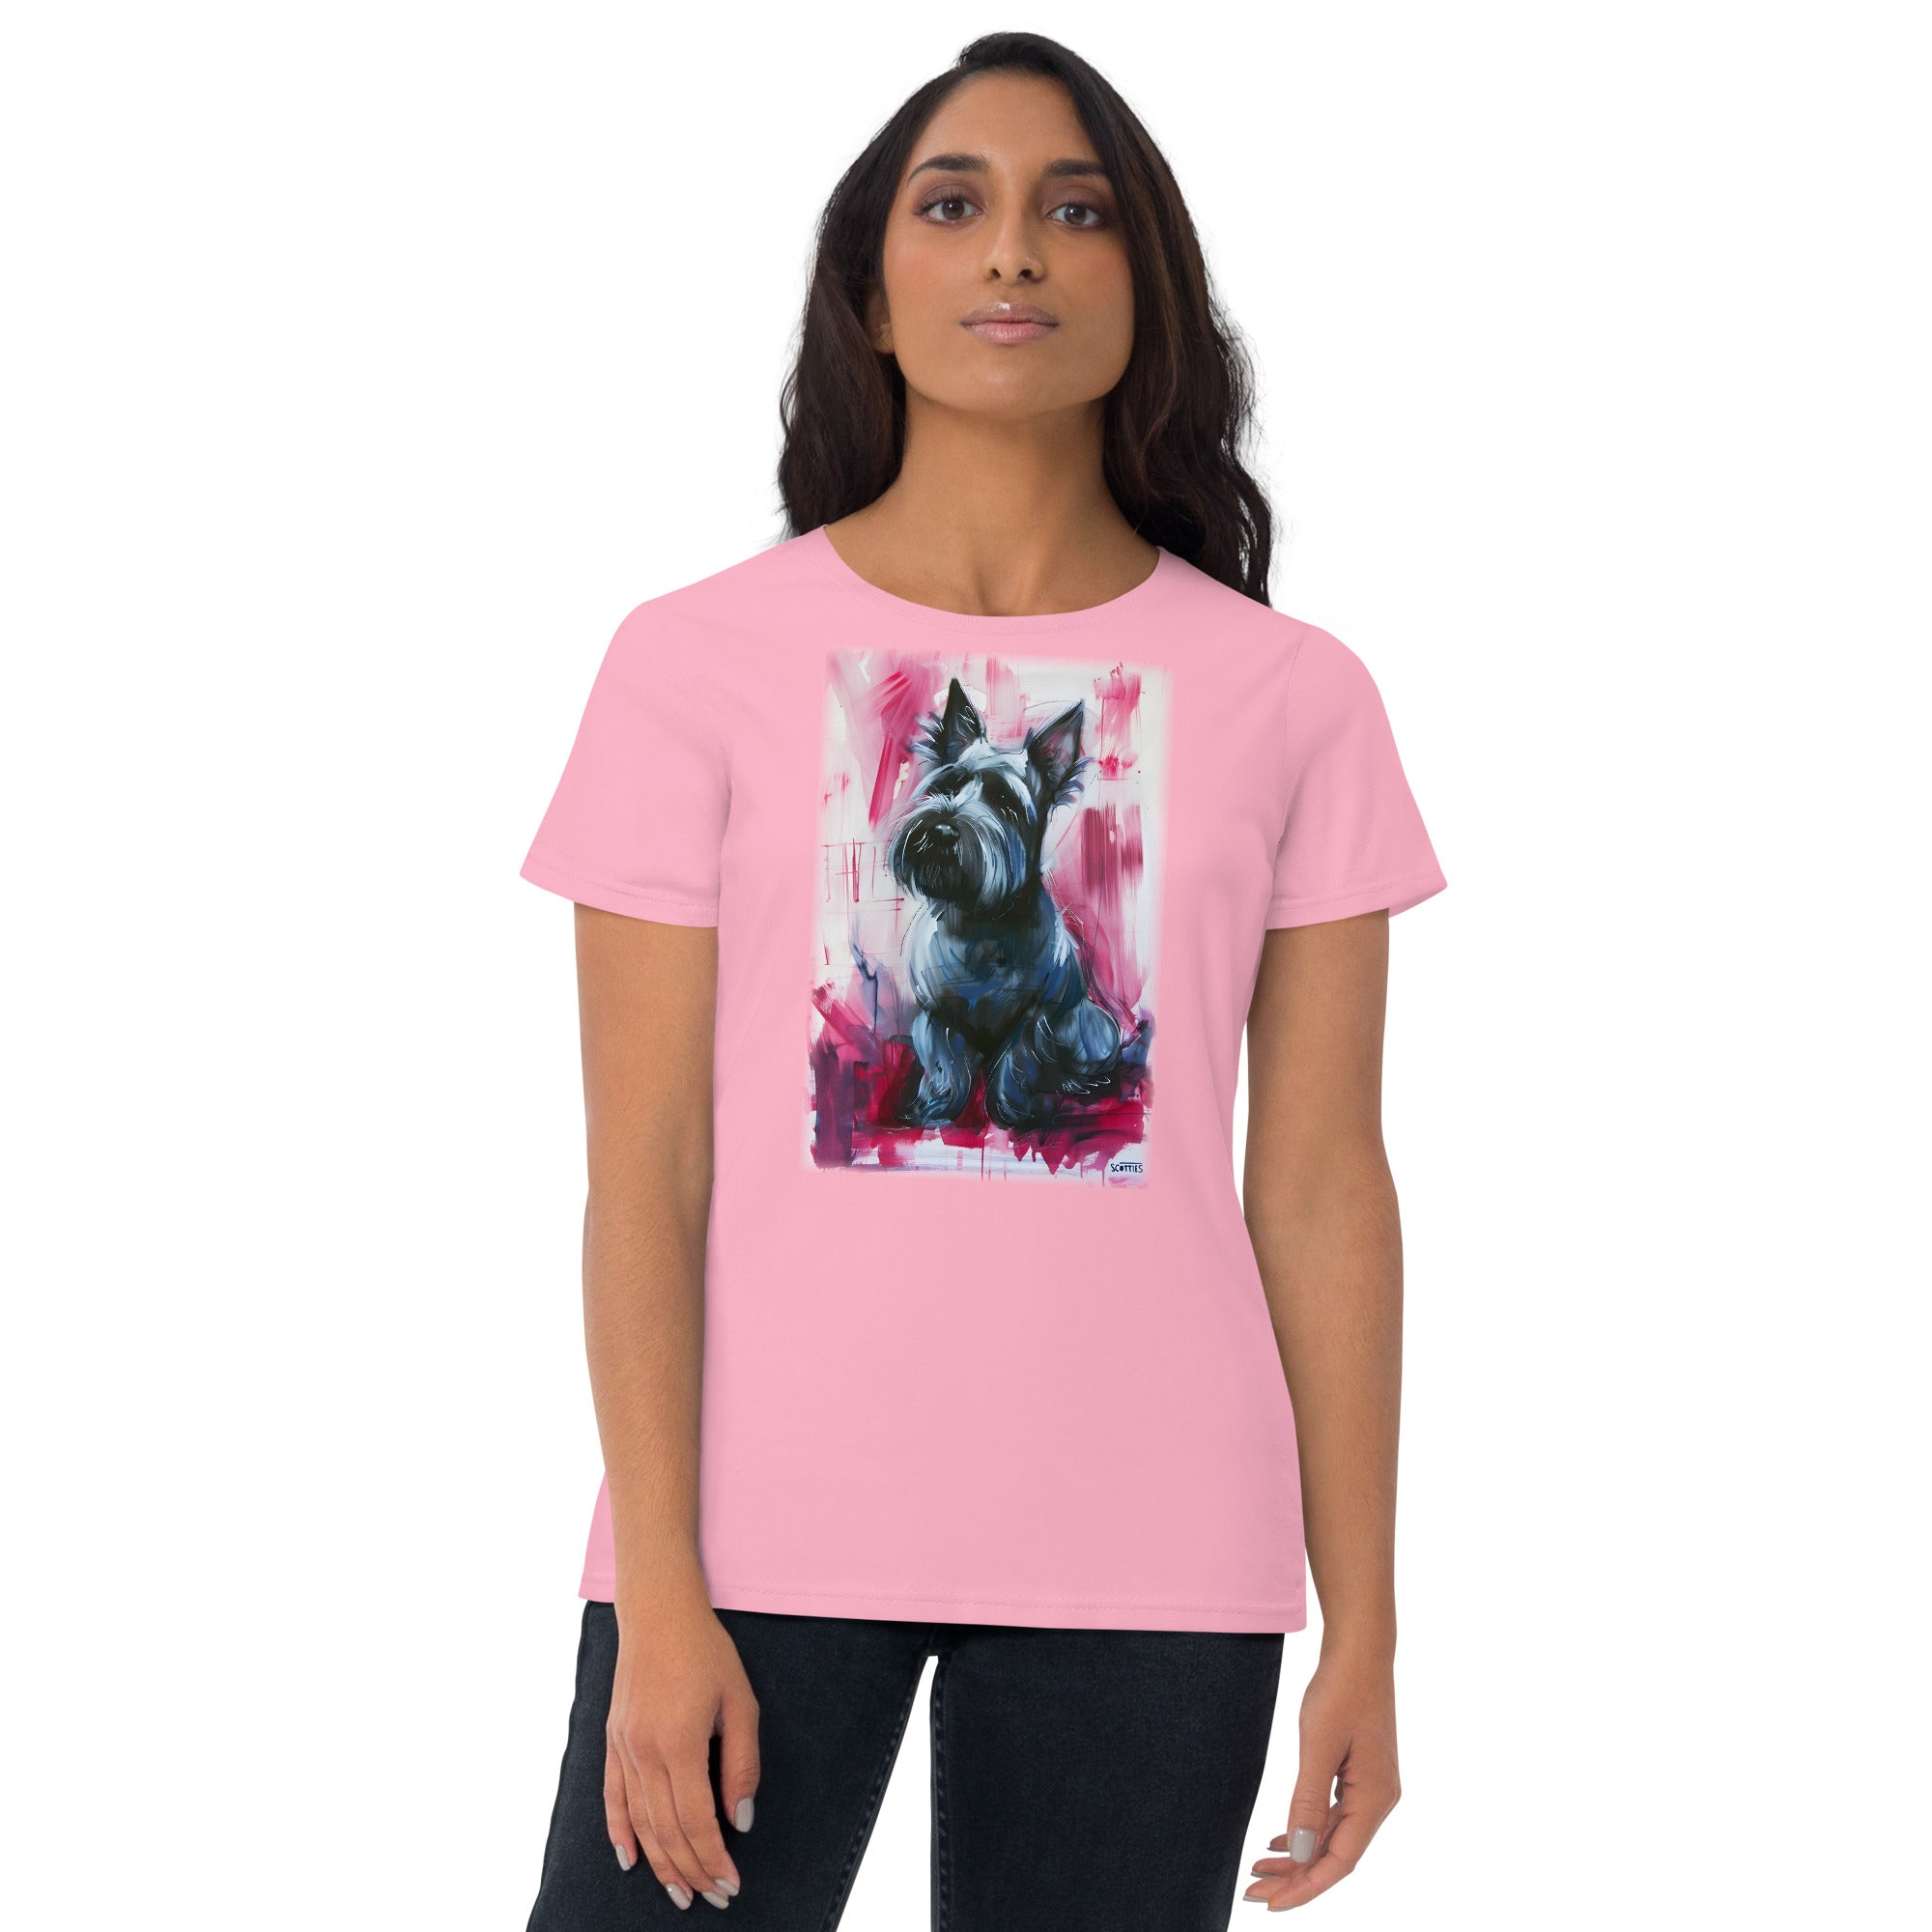 Scottish Terrier Women's short sleeve t-shirt